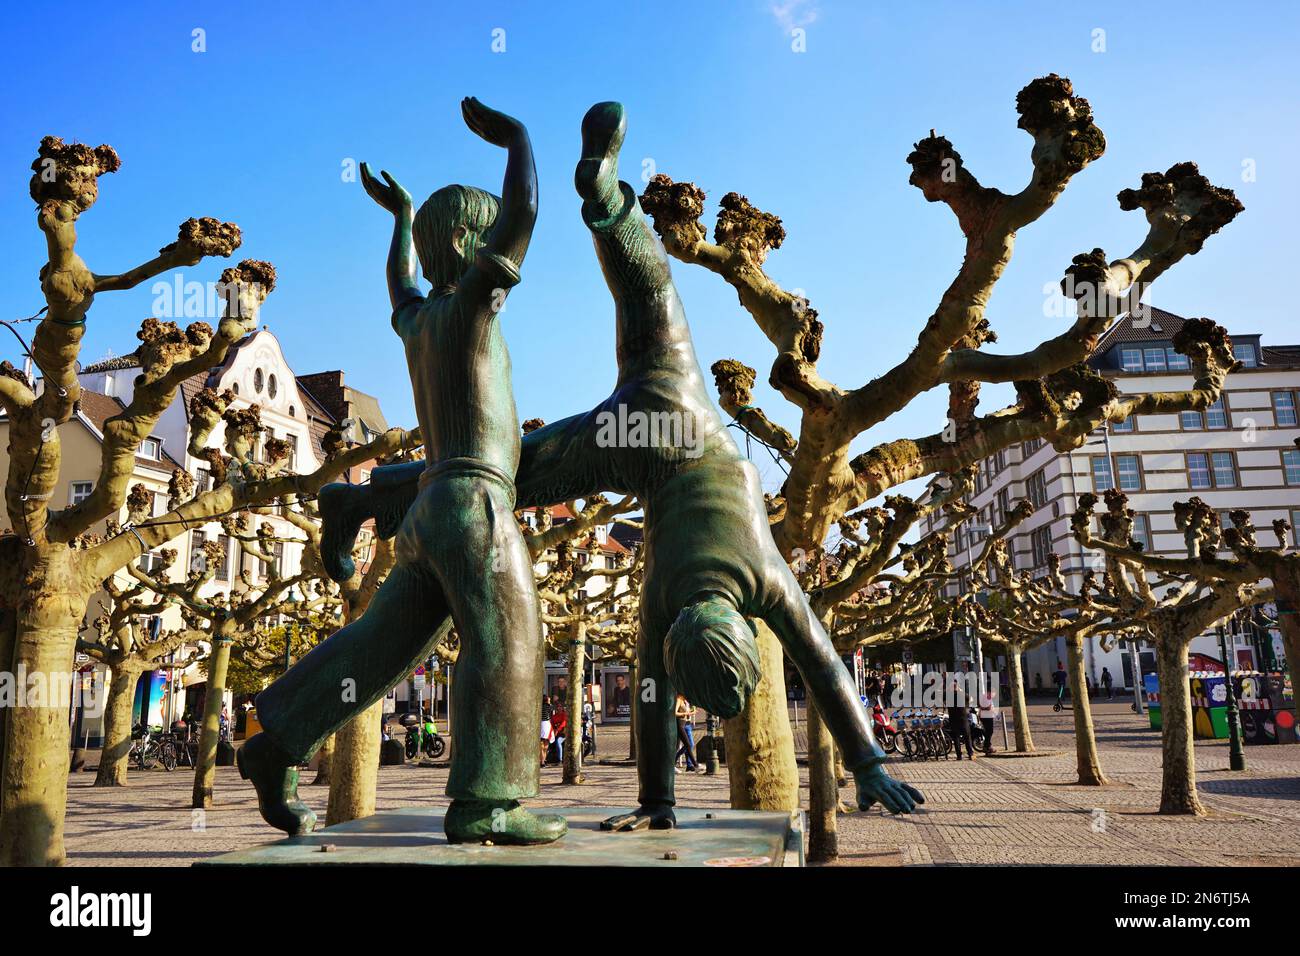 Sculpture de Cartwheeler dans la vieille ville de Düsseldorf/Allemagne. Cartwheeling est une tradition régionale historique à Düsseldorf. Banque D'Images